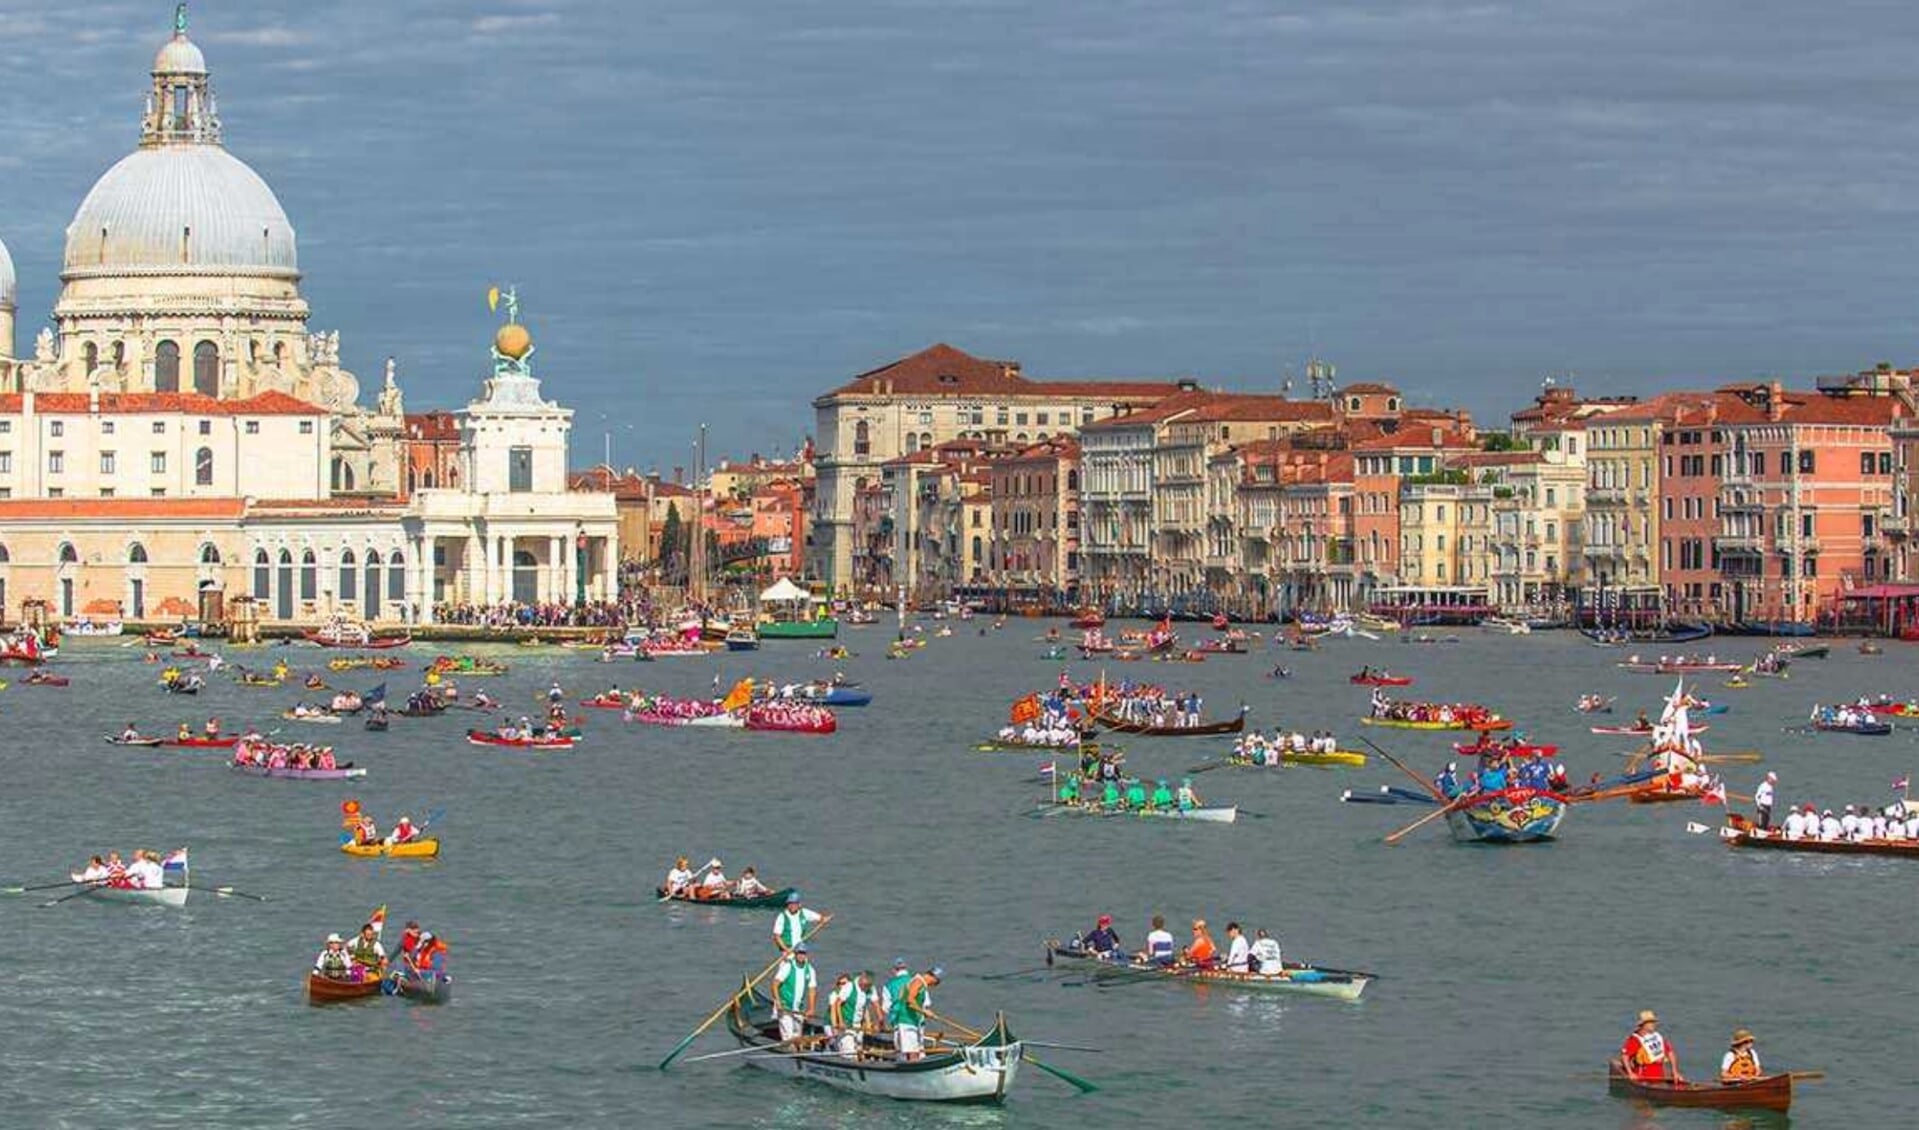 Vijf roeiers van Iris deden mee aan de 30 km lange Vogalonga, een tocht op de wateren rond Venetië.